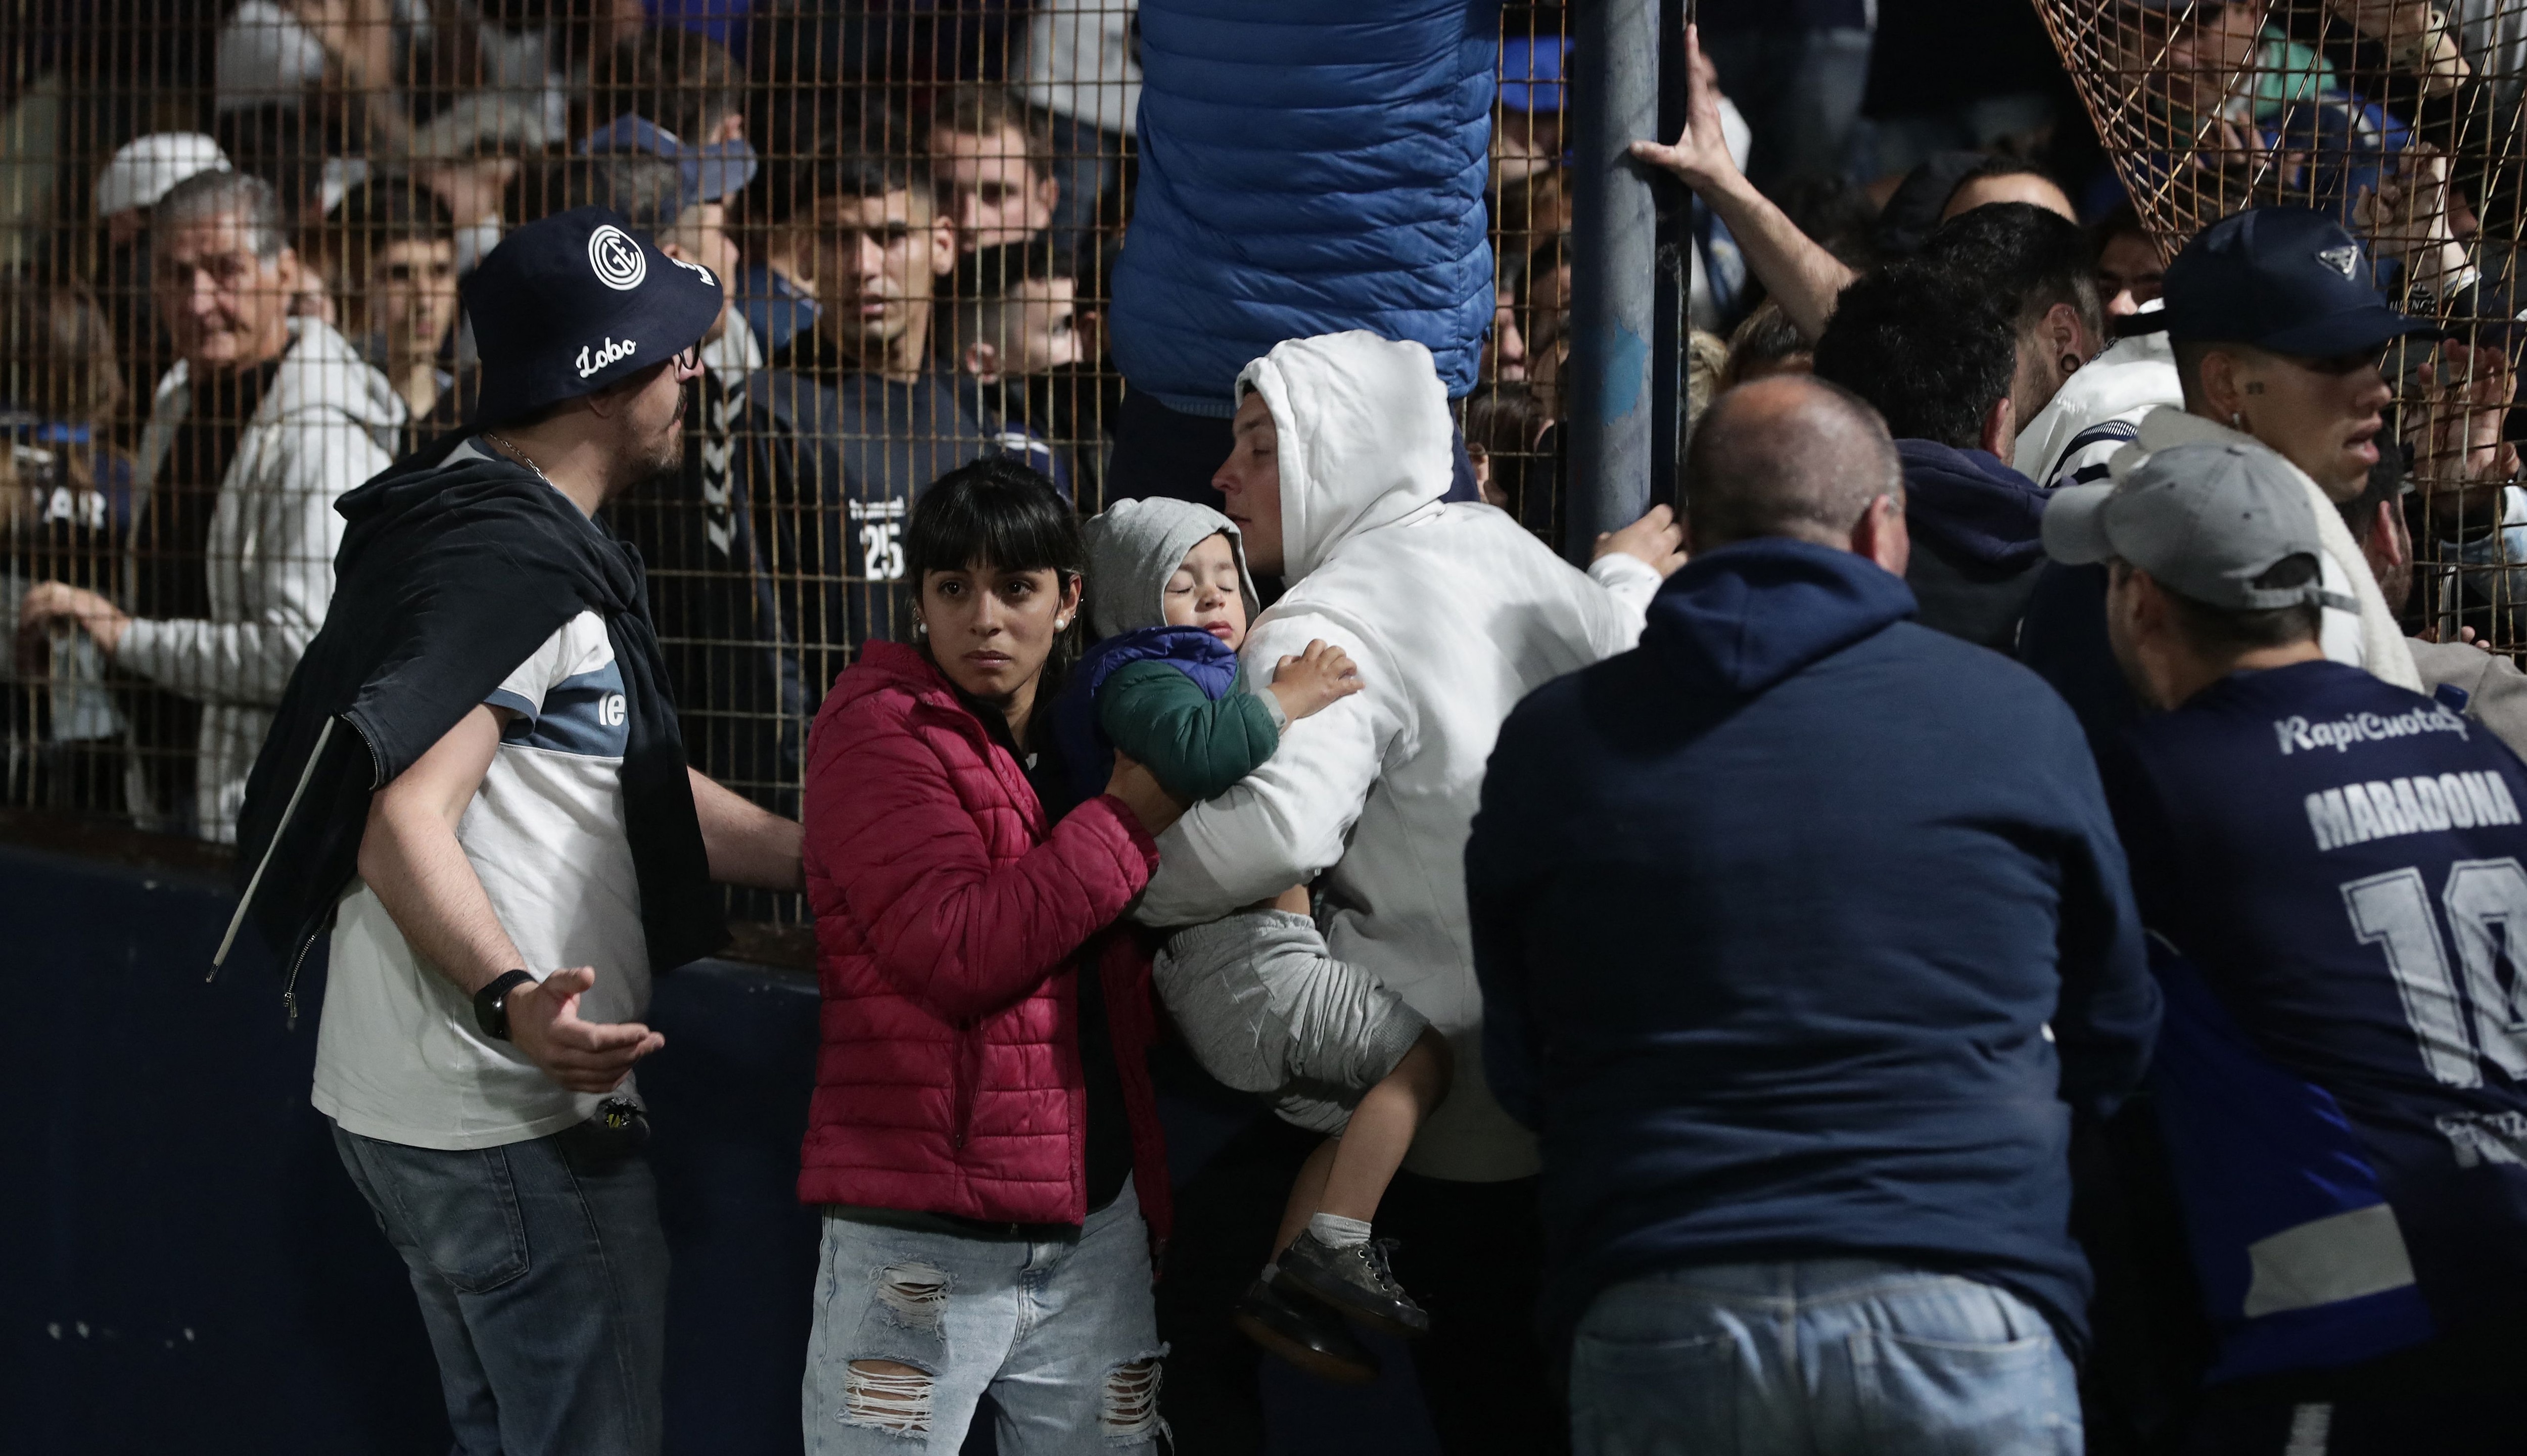 Los fanáticos reaccionan después de que la policía disparara gases lacrimógenos e ingresara al estadio Juan Carmelo Zerillo durante el partido entre Gimnasia y Esgrima y Boca Juniors el 6 de octubre de 2022. (Foto de ALEJANDRO PAGNI / AFP)